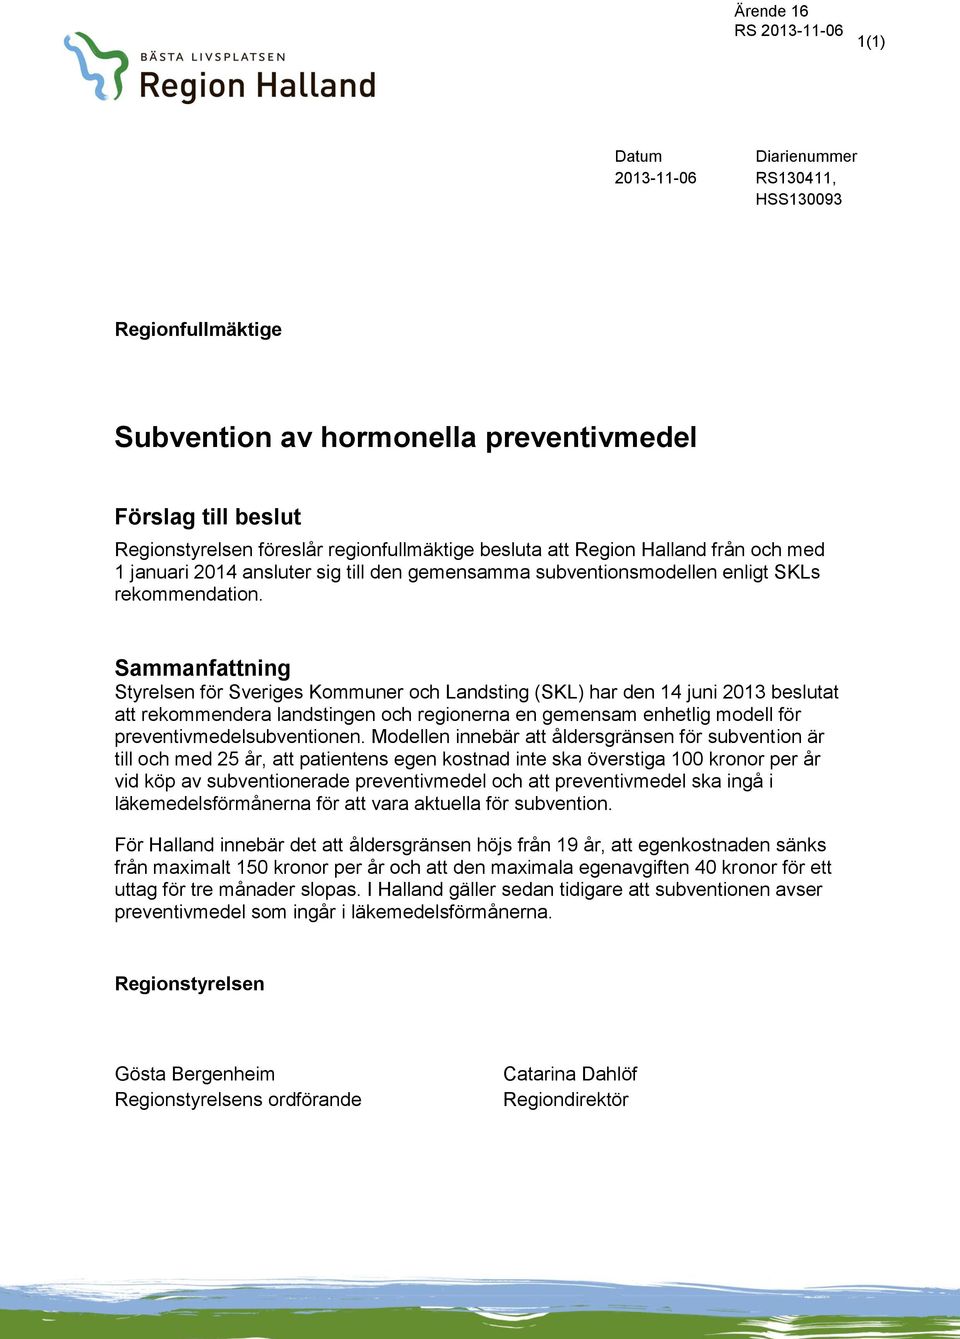 Sammanfattning Styrelsen för Sveriges Kommuner och Landsting (SKL) har den 14 juni 2013 beslutat att rekommendera landstingen och regionerna en gemensam enhetlig modell för preventivmedelsubventionen.